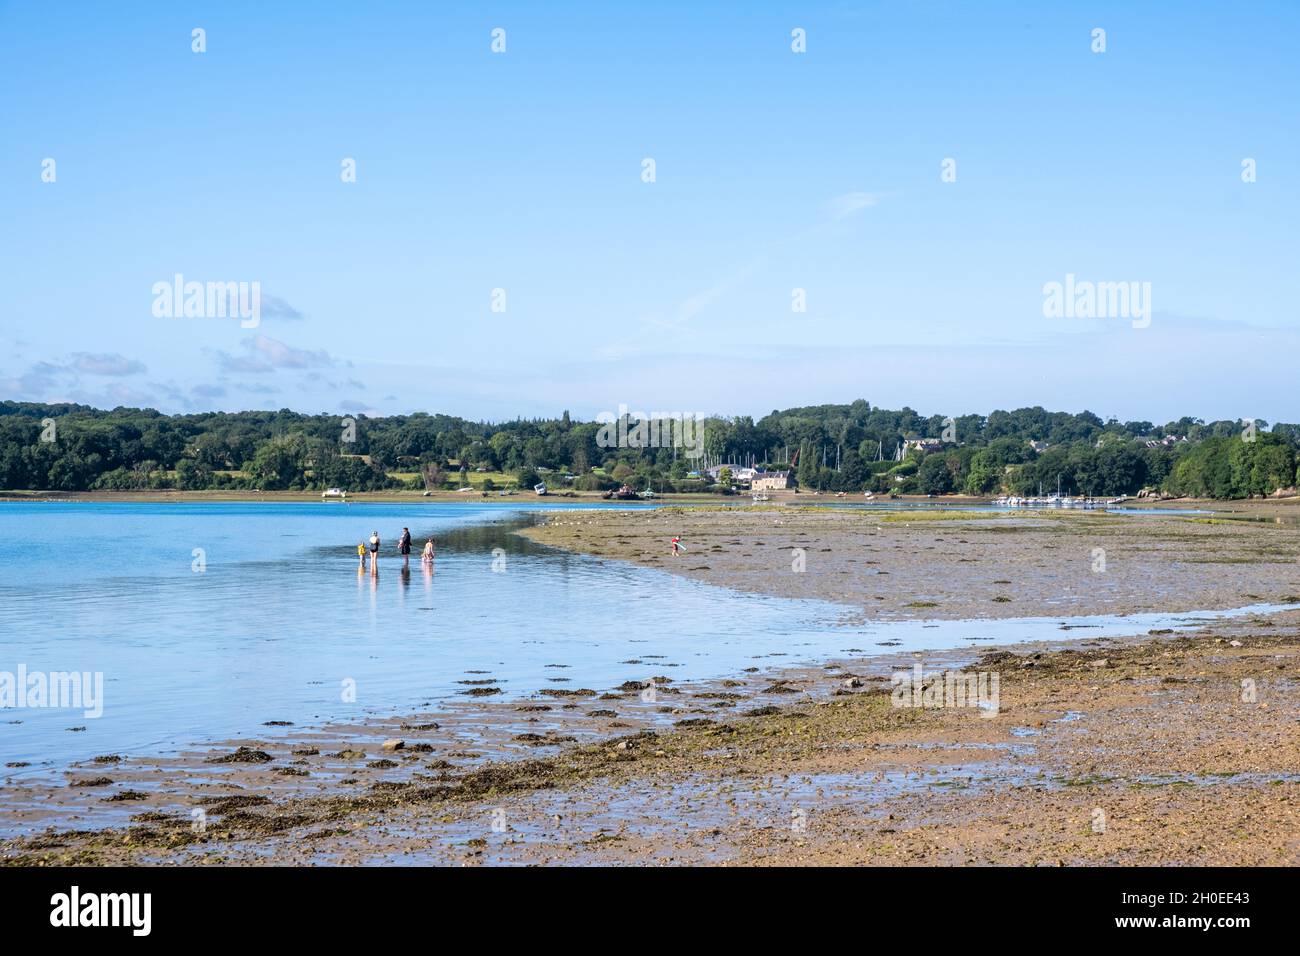 Le Minihic sur Rance (Bretagna, Francia nord-occidentale): Persone con i piedi in acqua a marea crescente sulla spiaggia di Minihic, presso il fiume Rance, Foto Stock